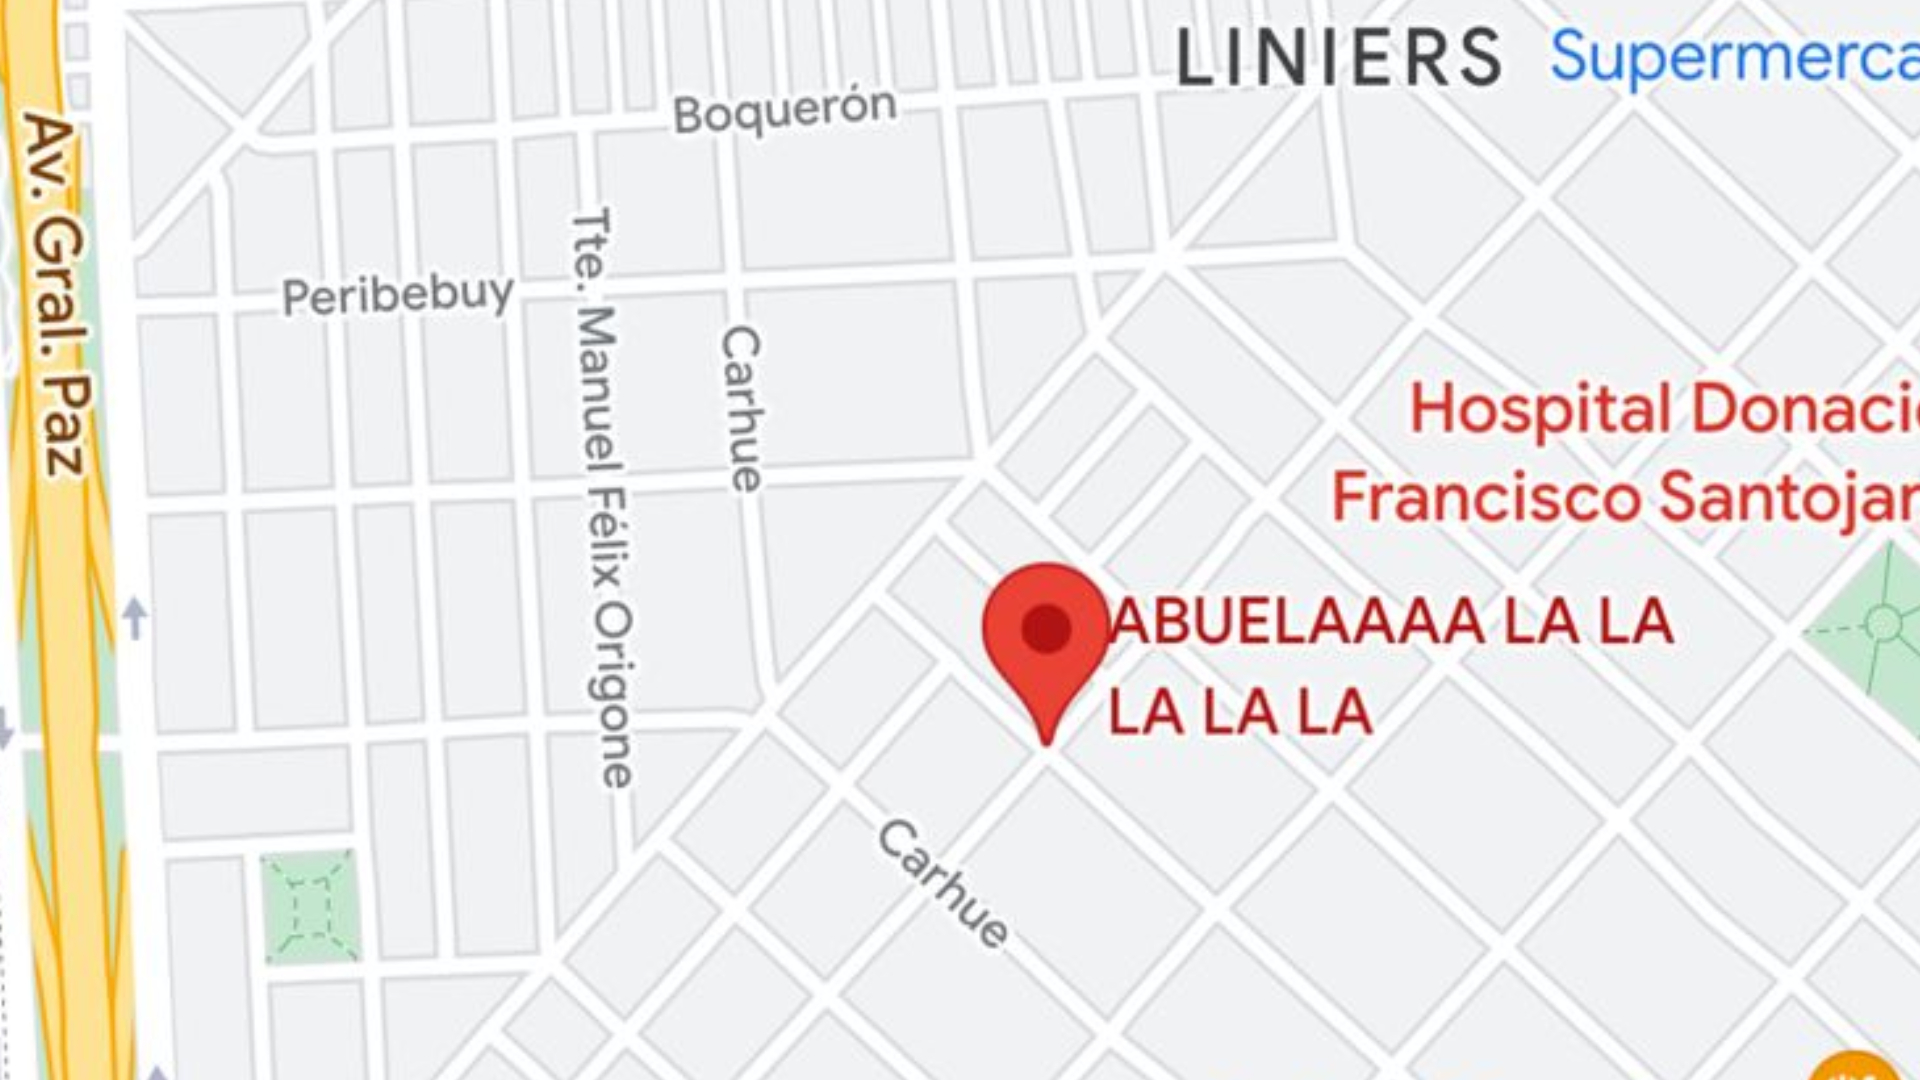 La esquina de Liniers en la que "Los pibes de Luro" festejan con la abuela.